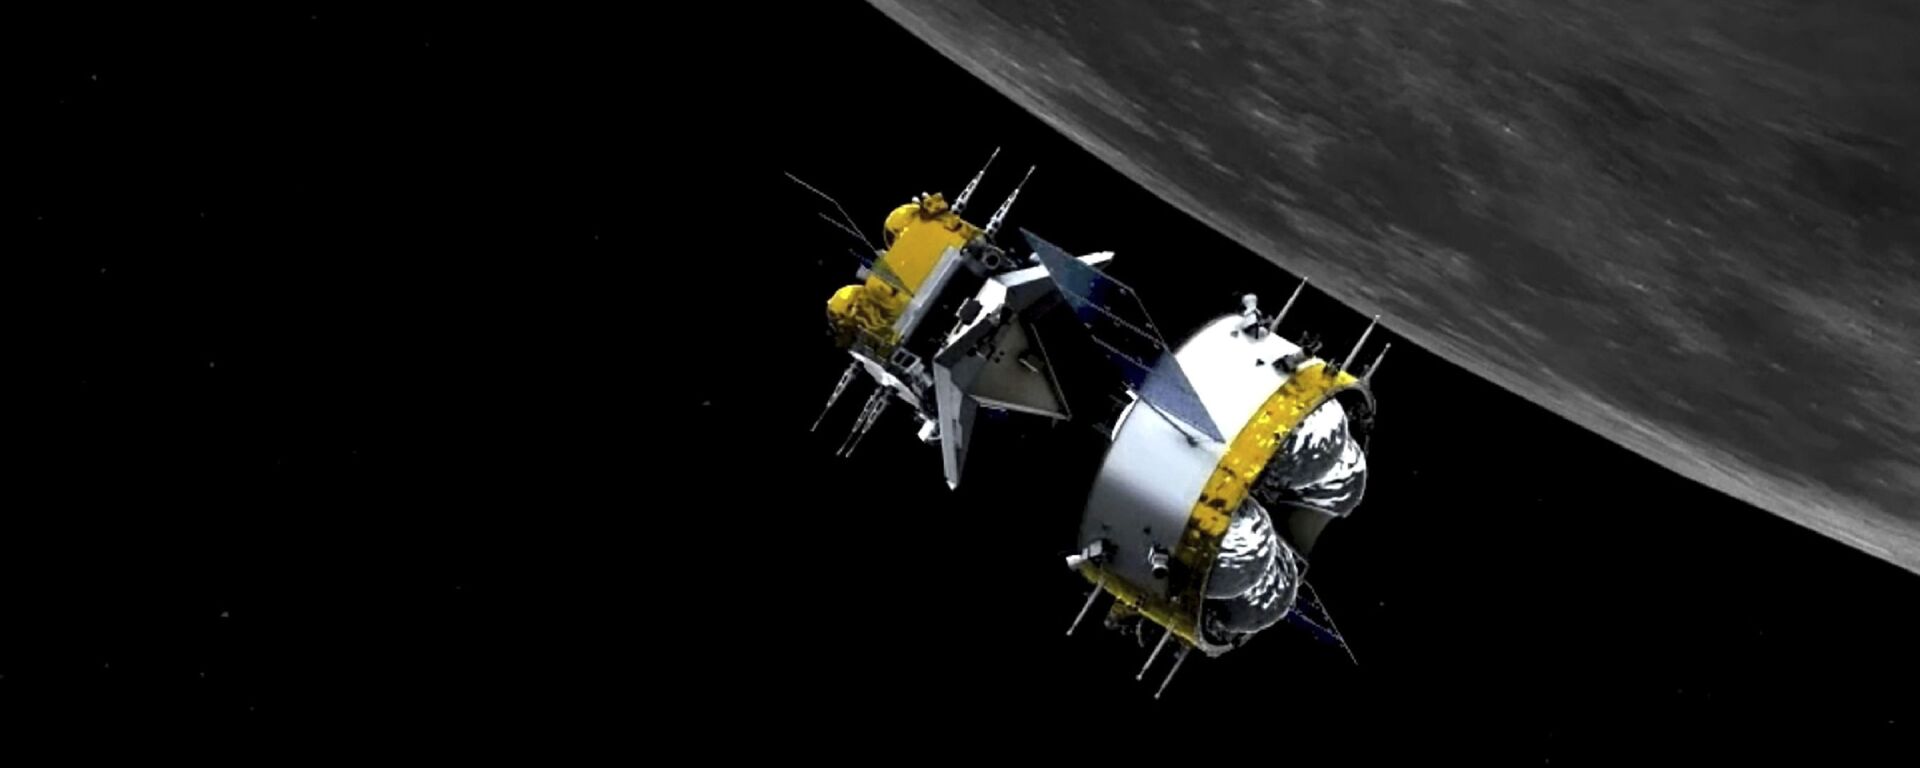   مسبار فضائي تشانغ آه-5 لجمع عينات من القمر وإعادتها، الصين 6 ديسمبر 2020 - سبوتنيك عربي, 1920, 12.03.2021